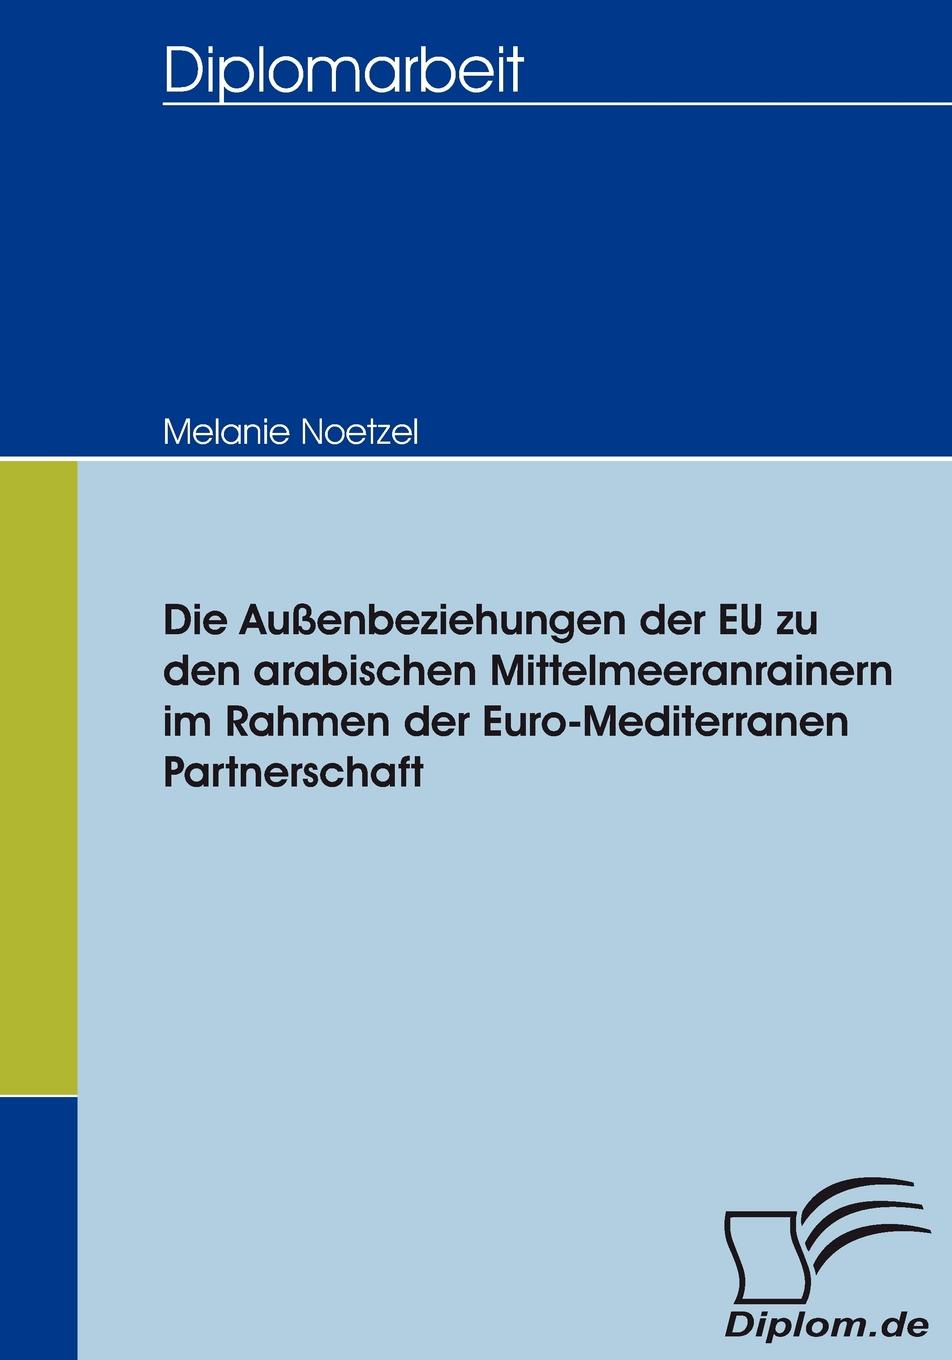 Die Aussenbeziehungen der EU zu den arabischen Mittelmeeranrainern im Rahmen der Euro-Mediterranen Partnerschaft